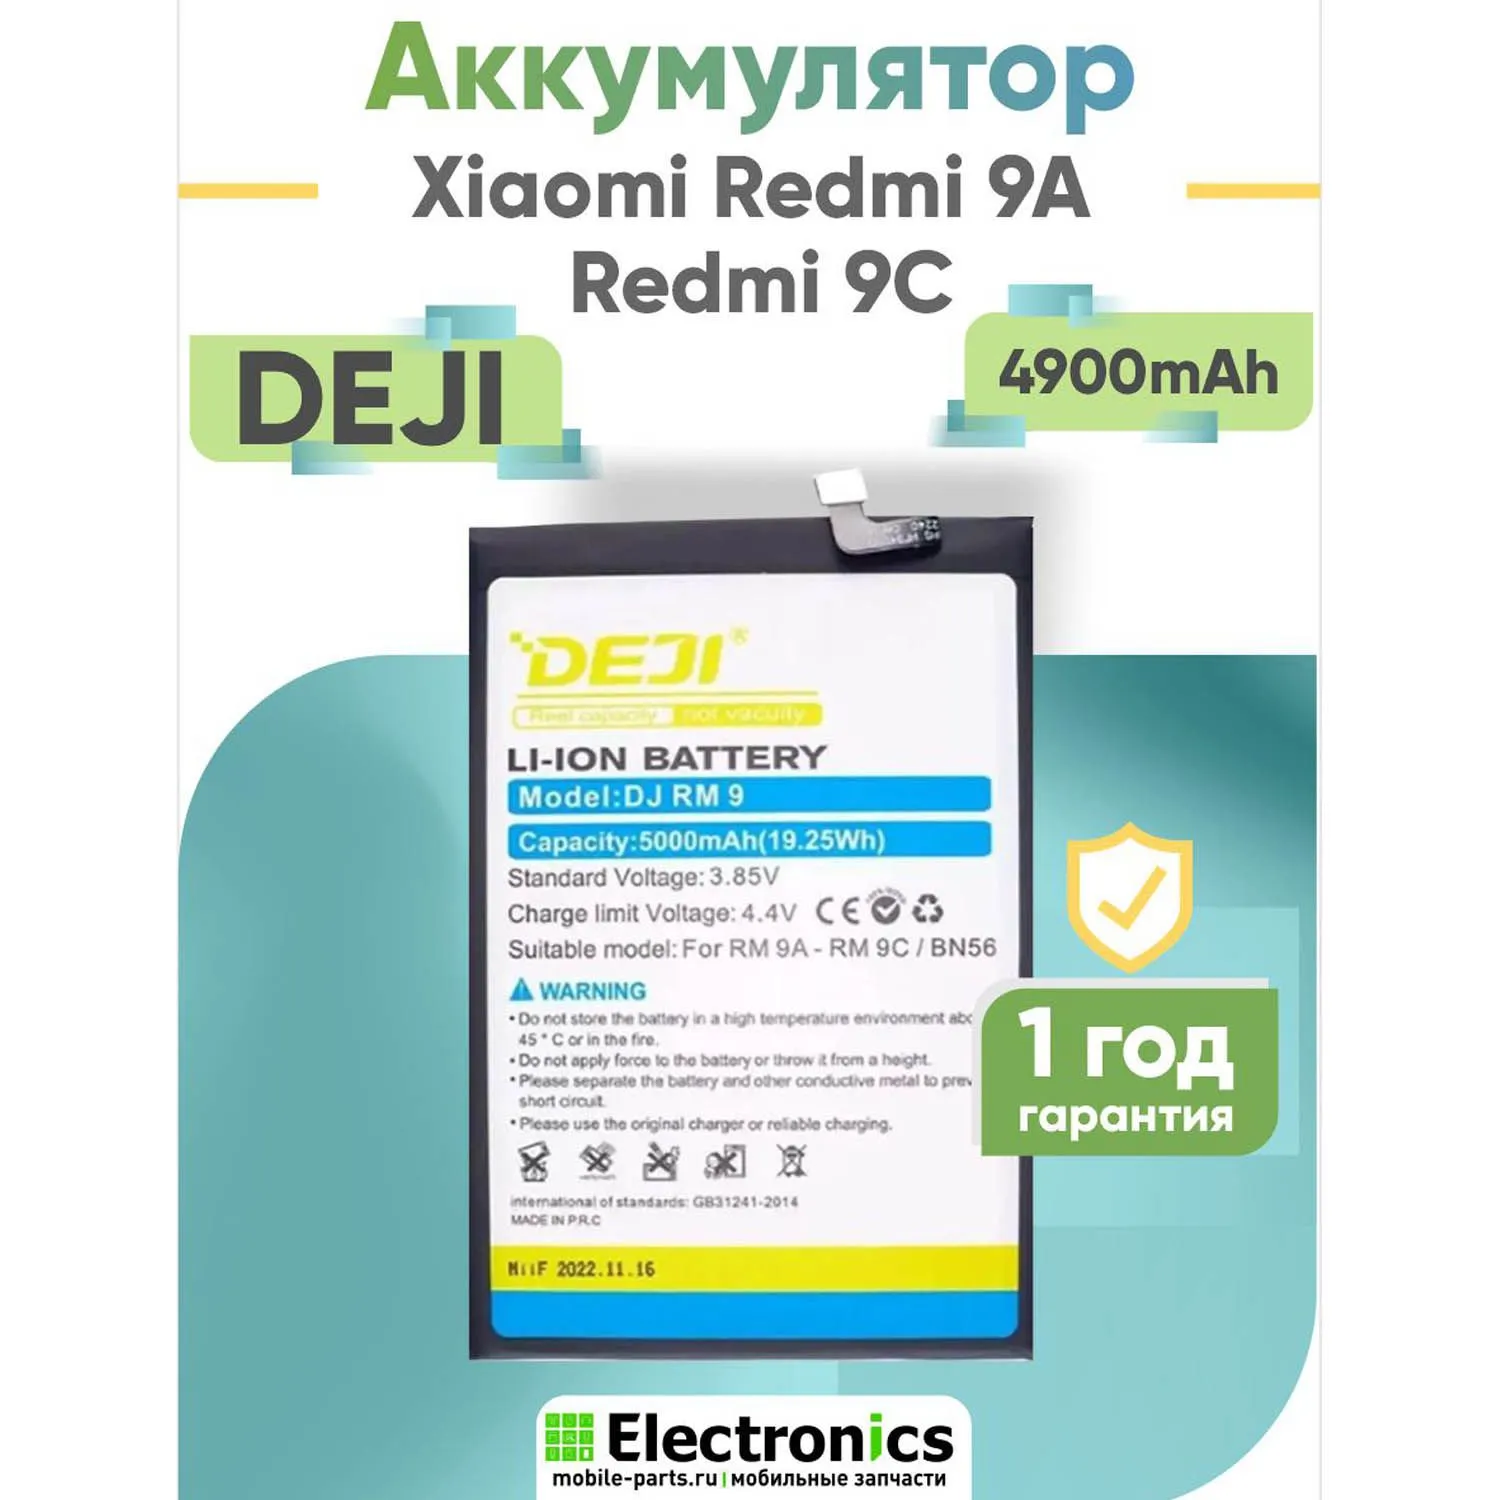 Аккумулятор DEJI Xiaomi Redmi 9A, Redmi 9C BN56 4900mAh